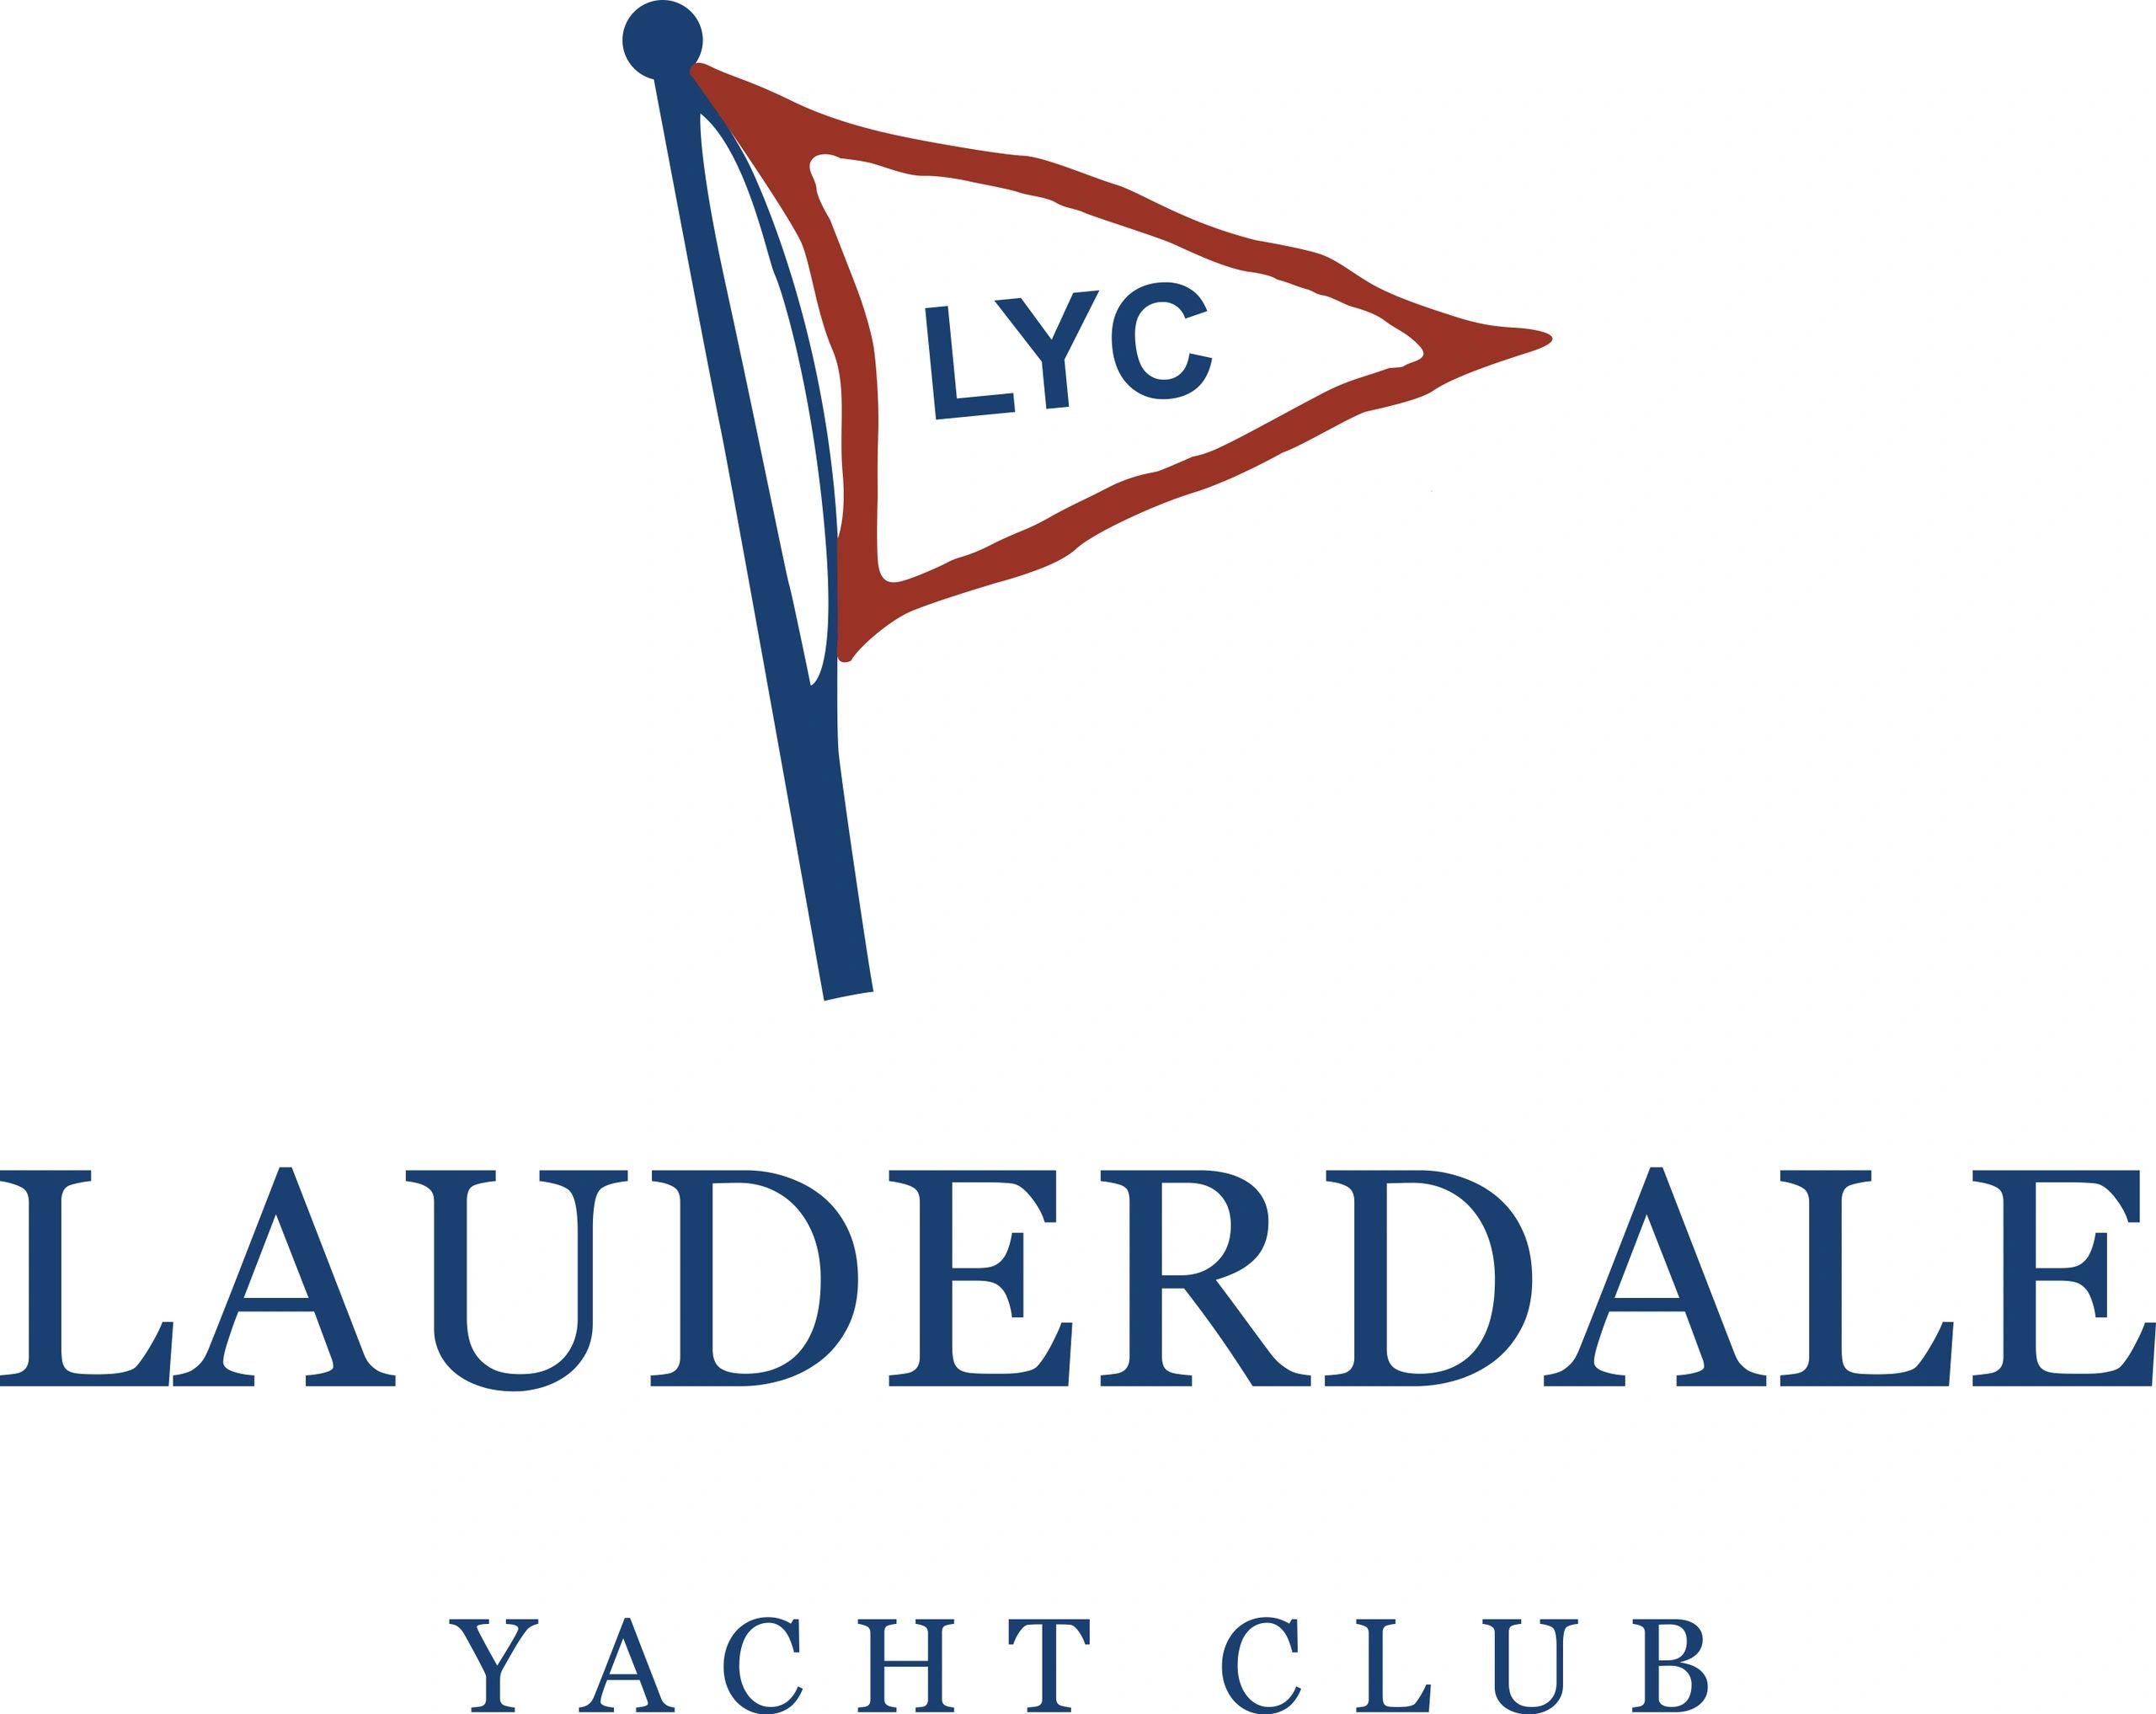 lauderdale yacht club membership cost